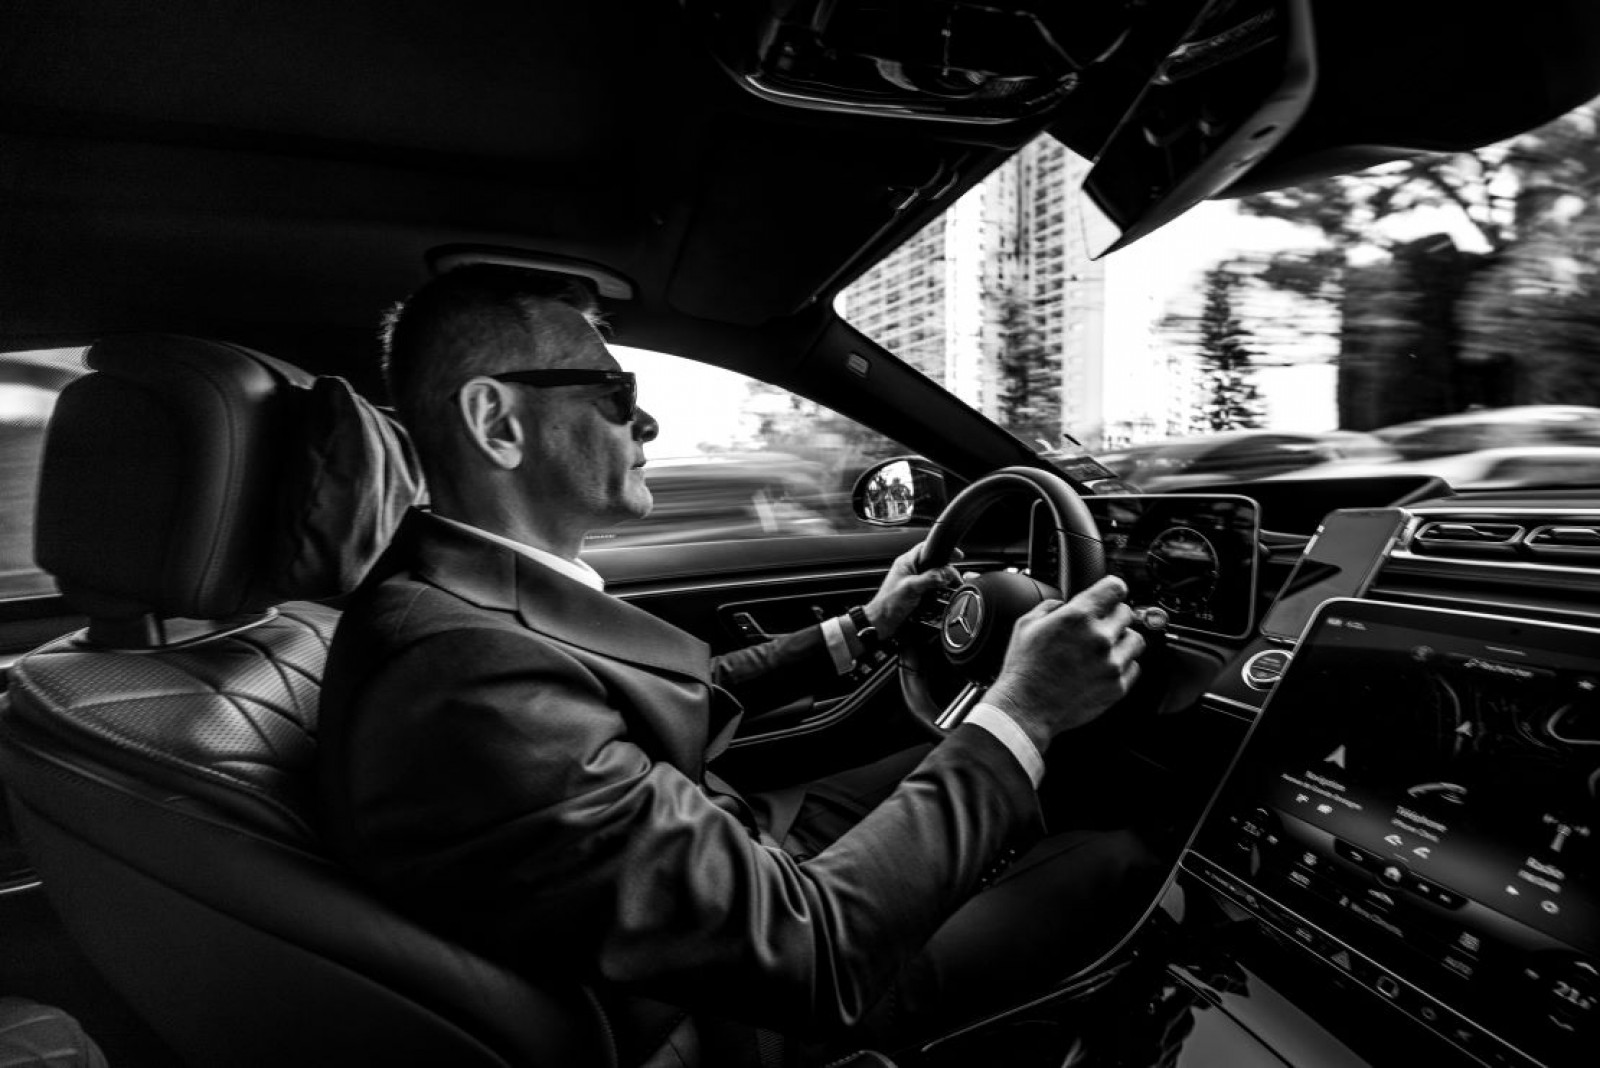 Limousine avec Chauffeur à Monaco – Service 24/7 – Chauffeur Privé – Devis Personnalisé